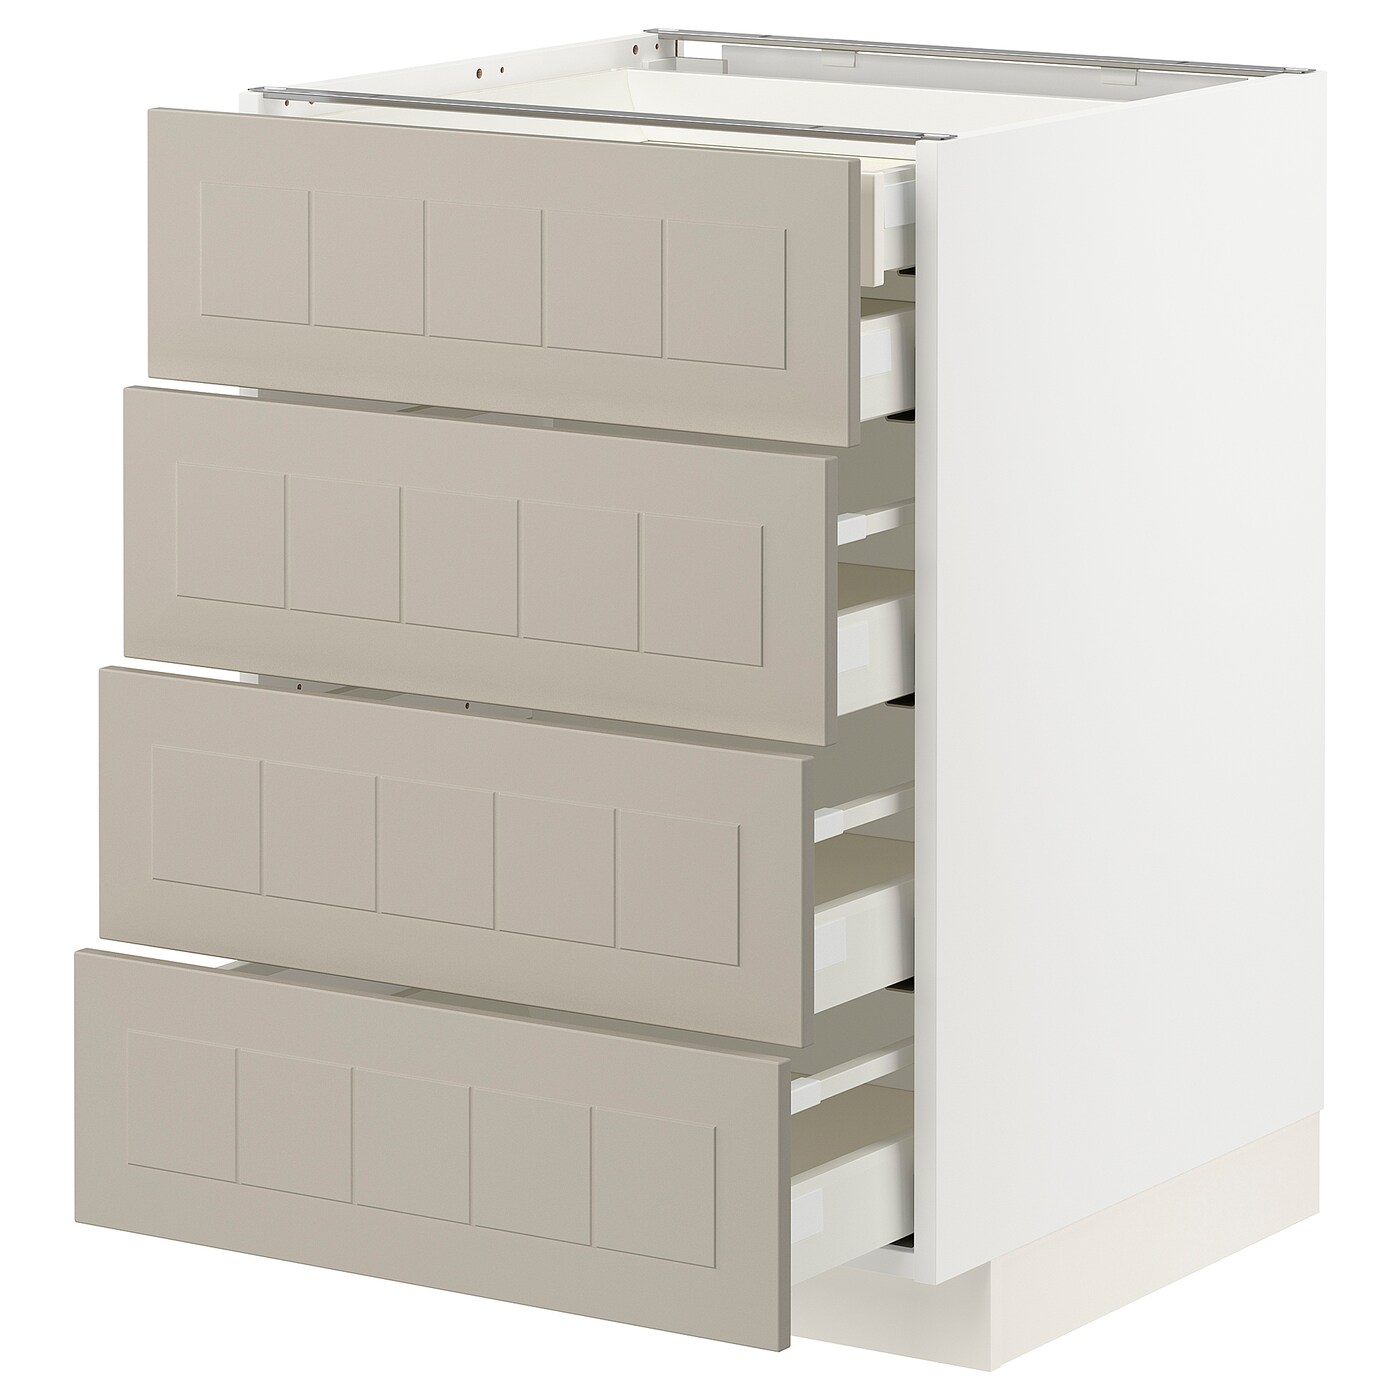 Напольный кухонный шкаф  - IKEA METOD MAXIMERA, 88x61,9x60см, белый/светло-коричневый, МЕТОД МАКСИМЕРА ИКЕА